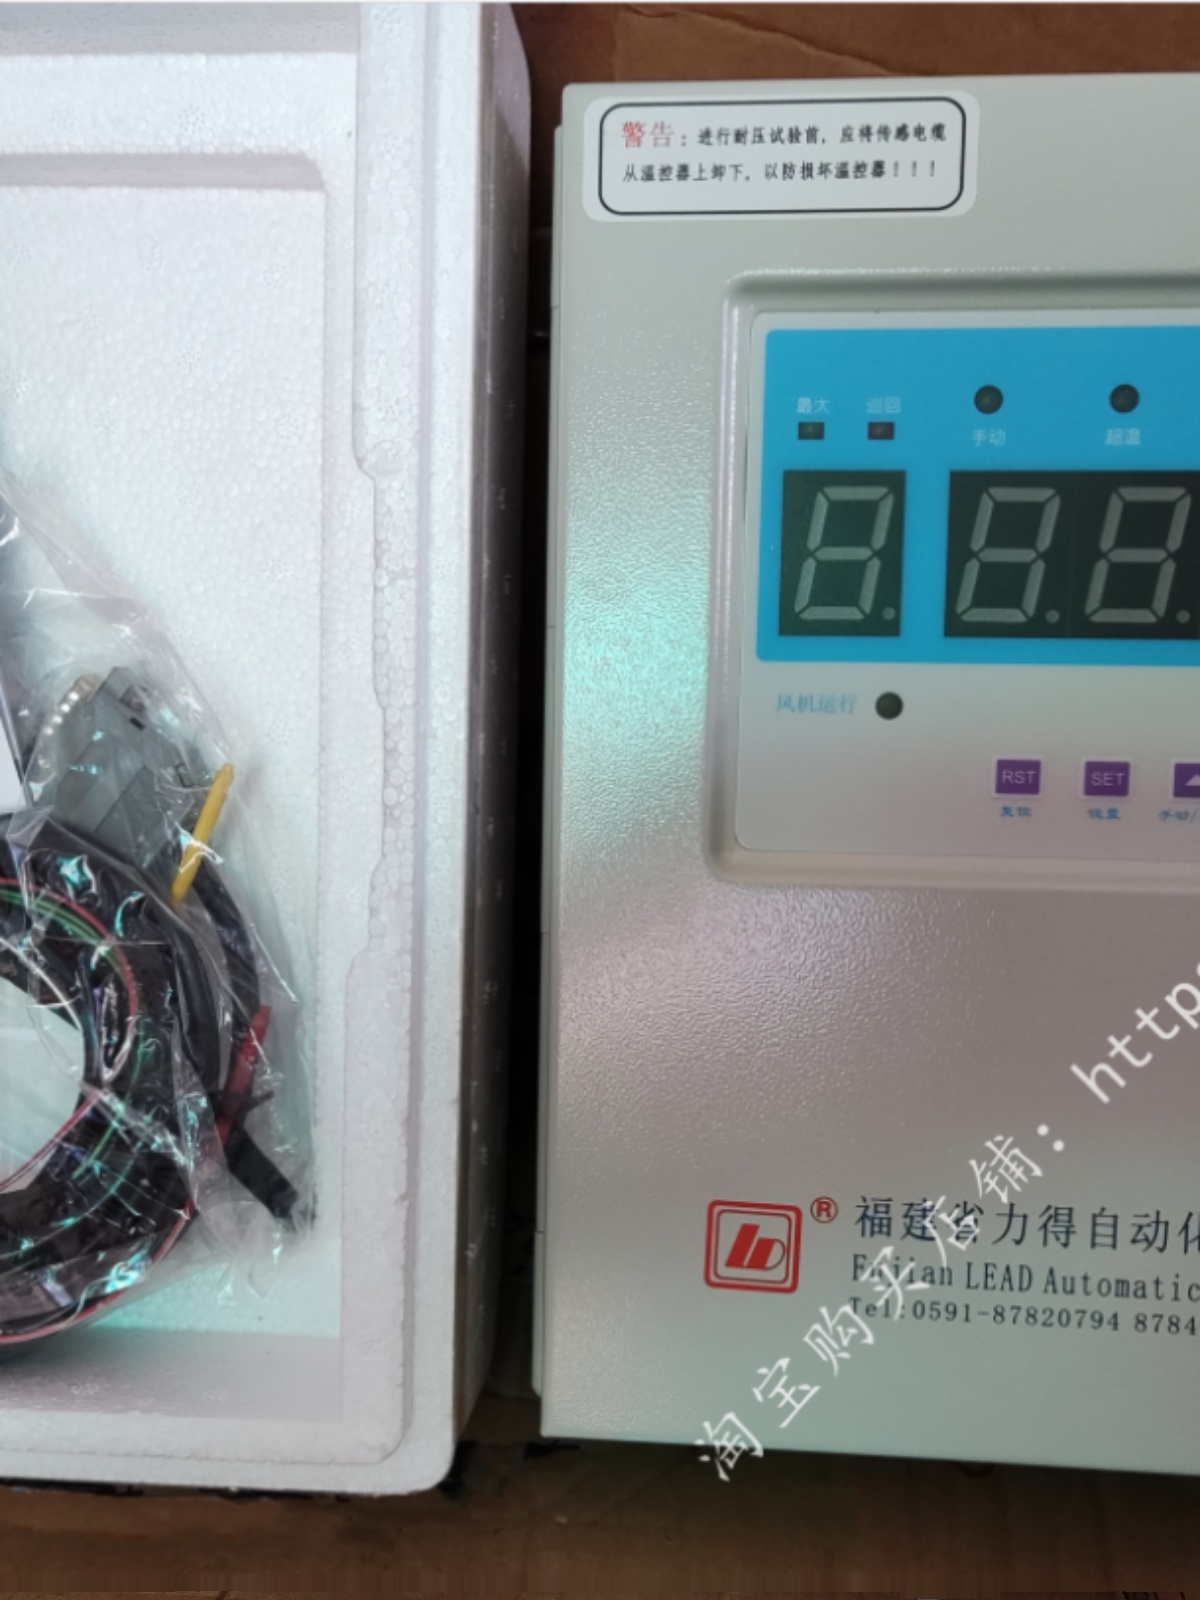 LD-B10-220D福建力得自动化干式变压器温度控制器LD-B10-220F